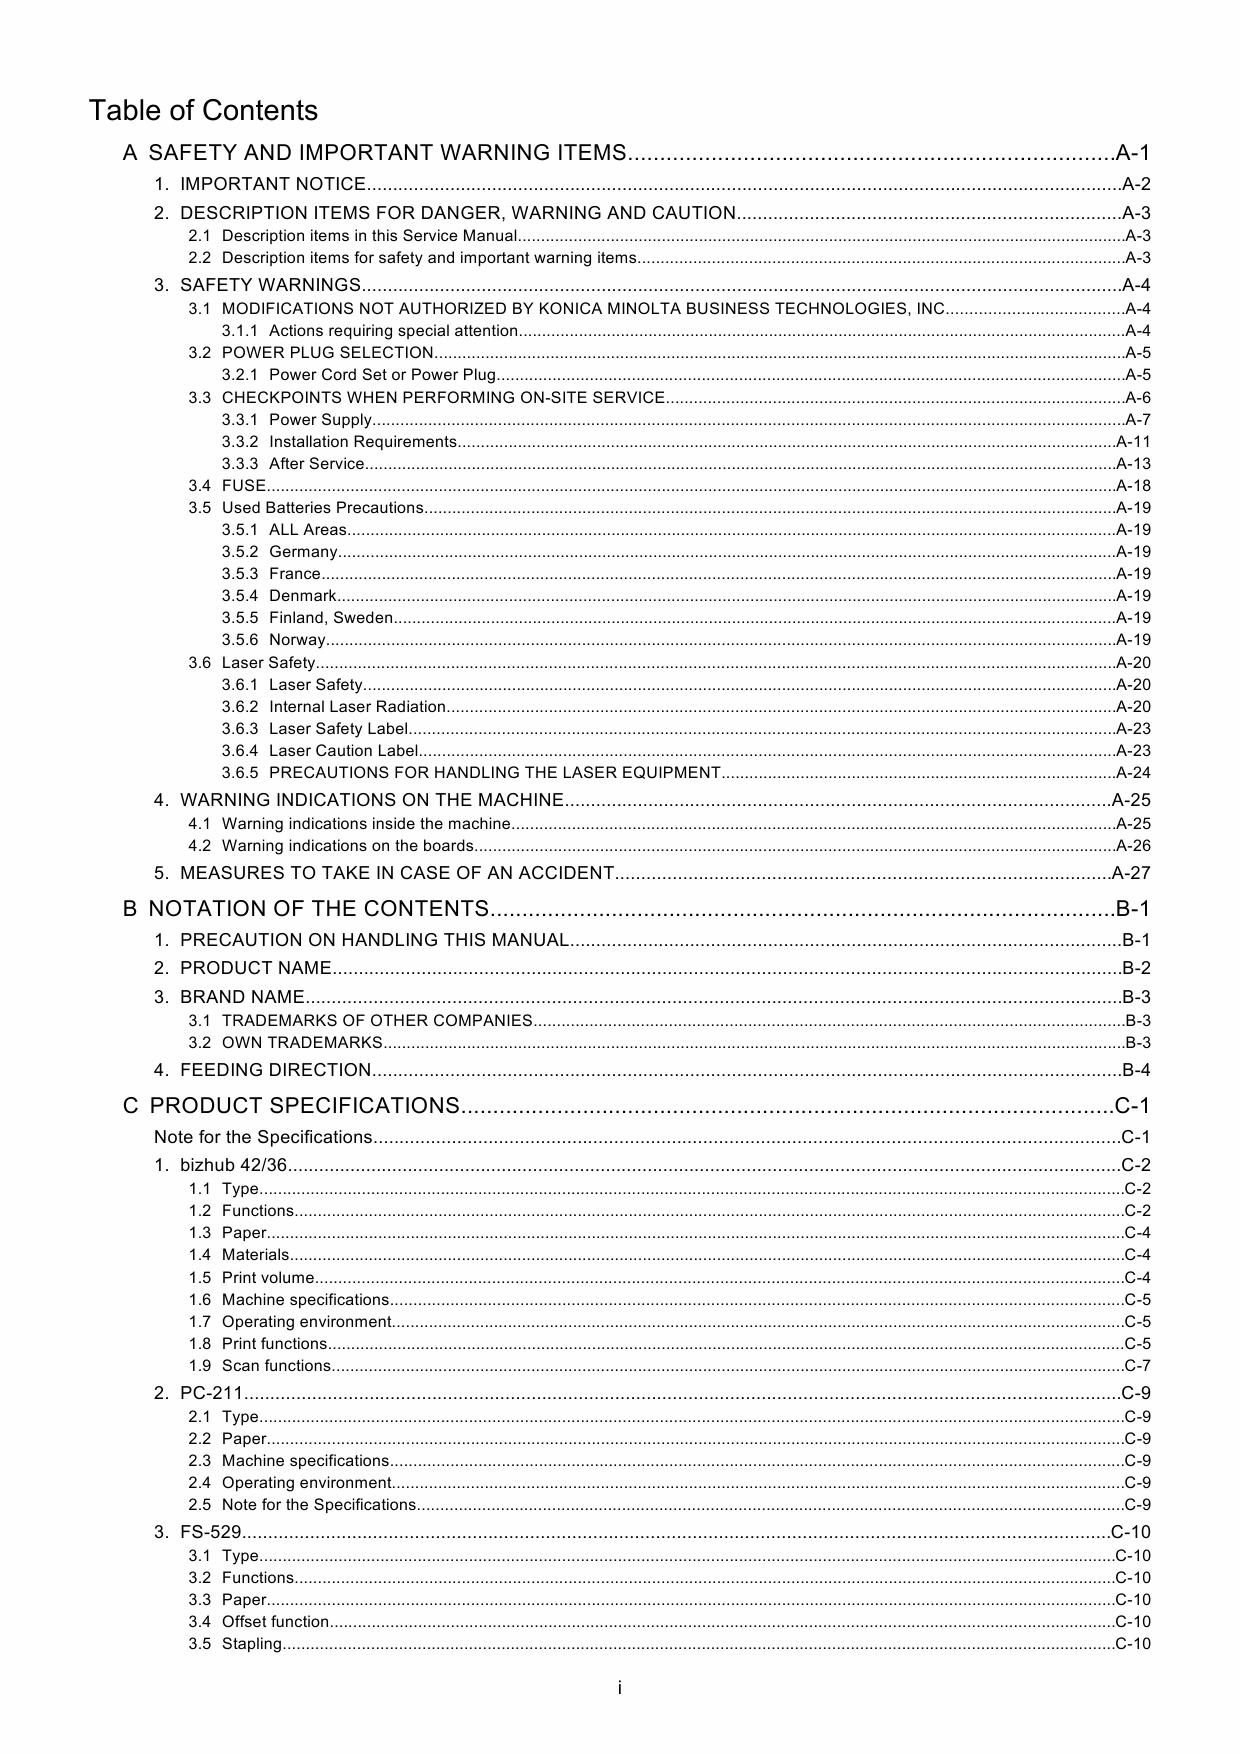 Konica-Minolta bizhub 42 36 Service Manual-2